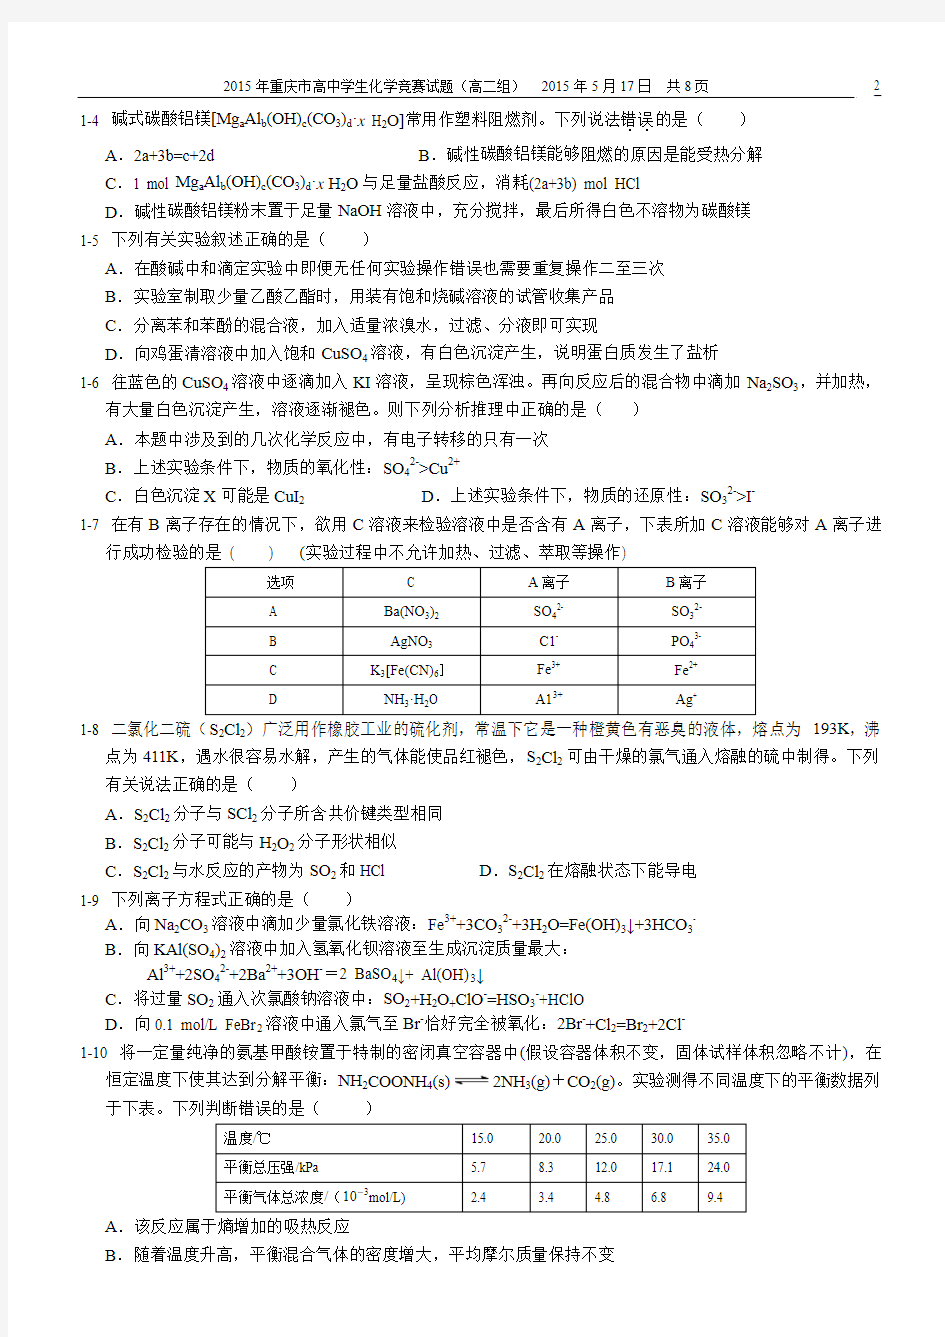 高二组--2015年重庆市高中学生化学竞赛试题2015.4